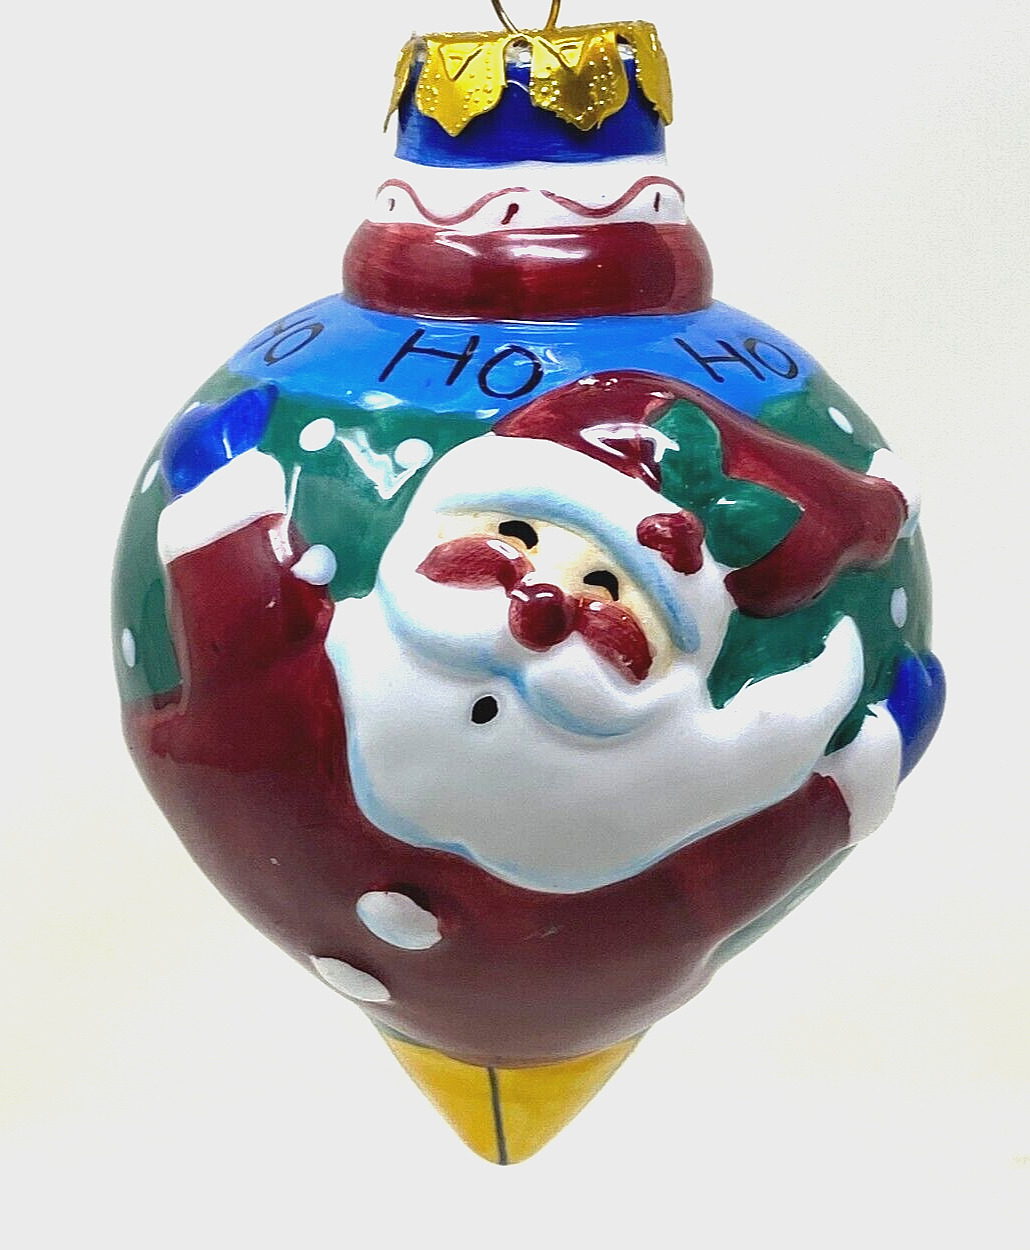 Santa Claus Porcelain Christmas Ornament Ho Ho Ho 4.25in NEW